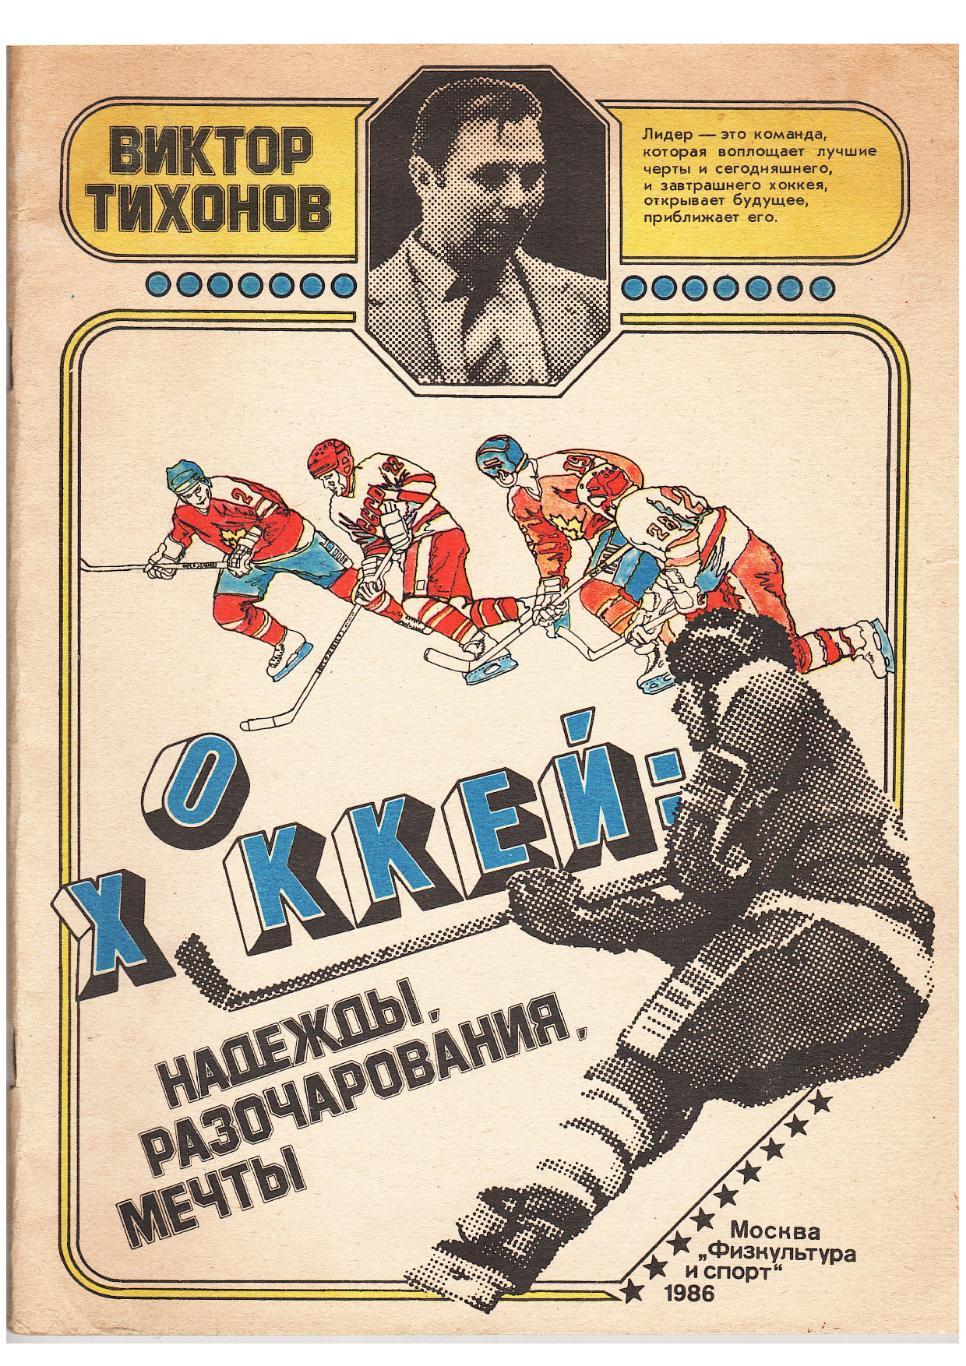 Виктор Тихонов. Хоккей: надежды, разочарования, мечты. Москва, 1986.